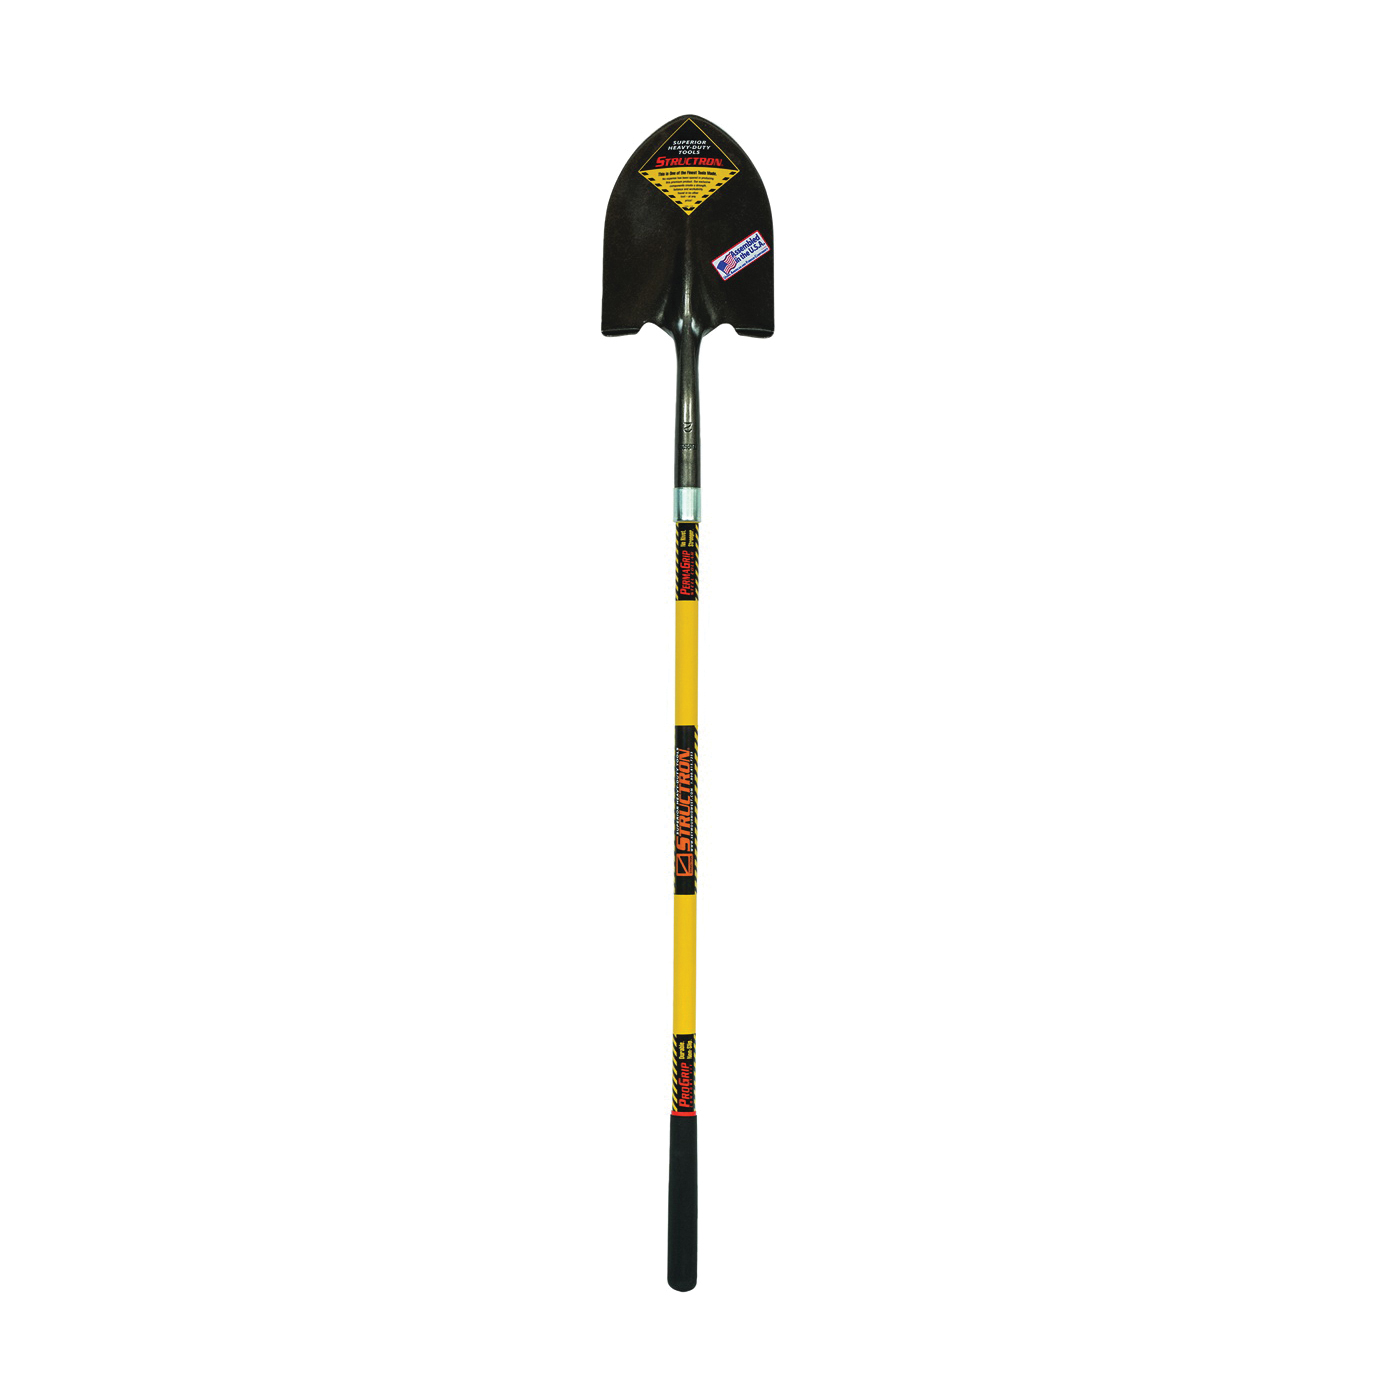 S600 Power 49560 Shovel, 9-1/2 in W Blade, 14 ga Gauge, Steel Blade, Fiberglass Handle, Long Handle